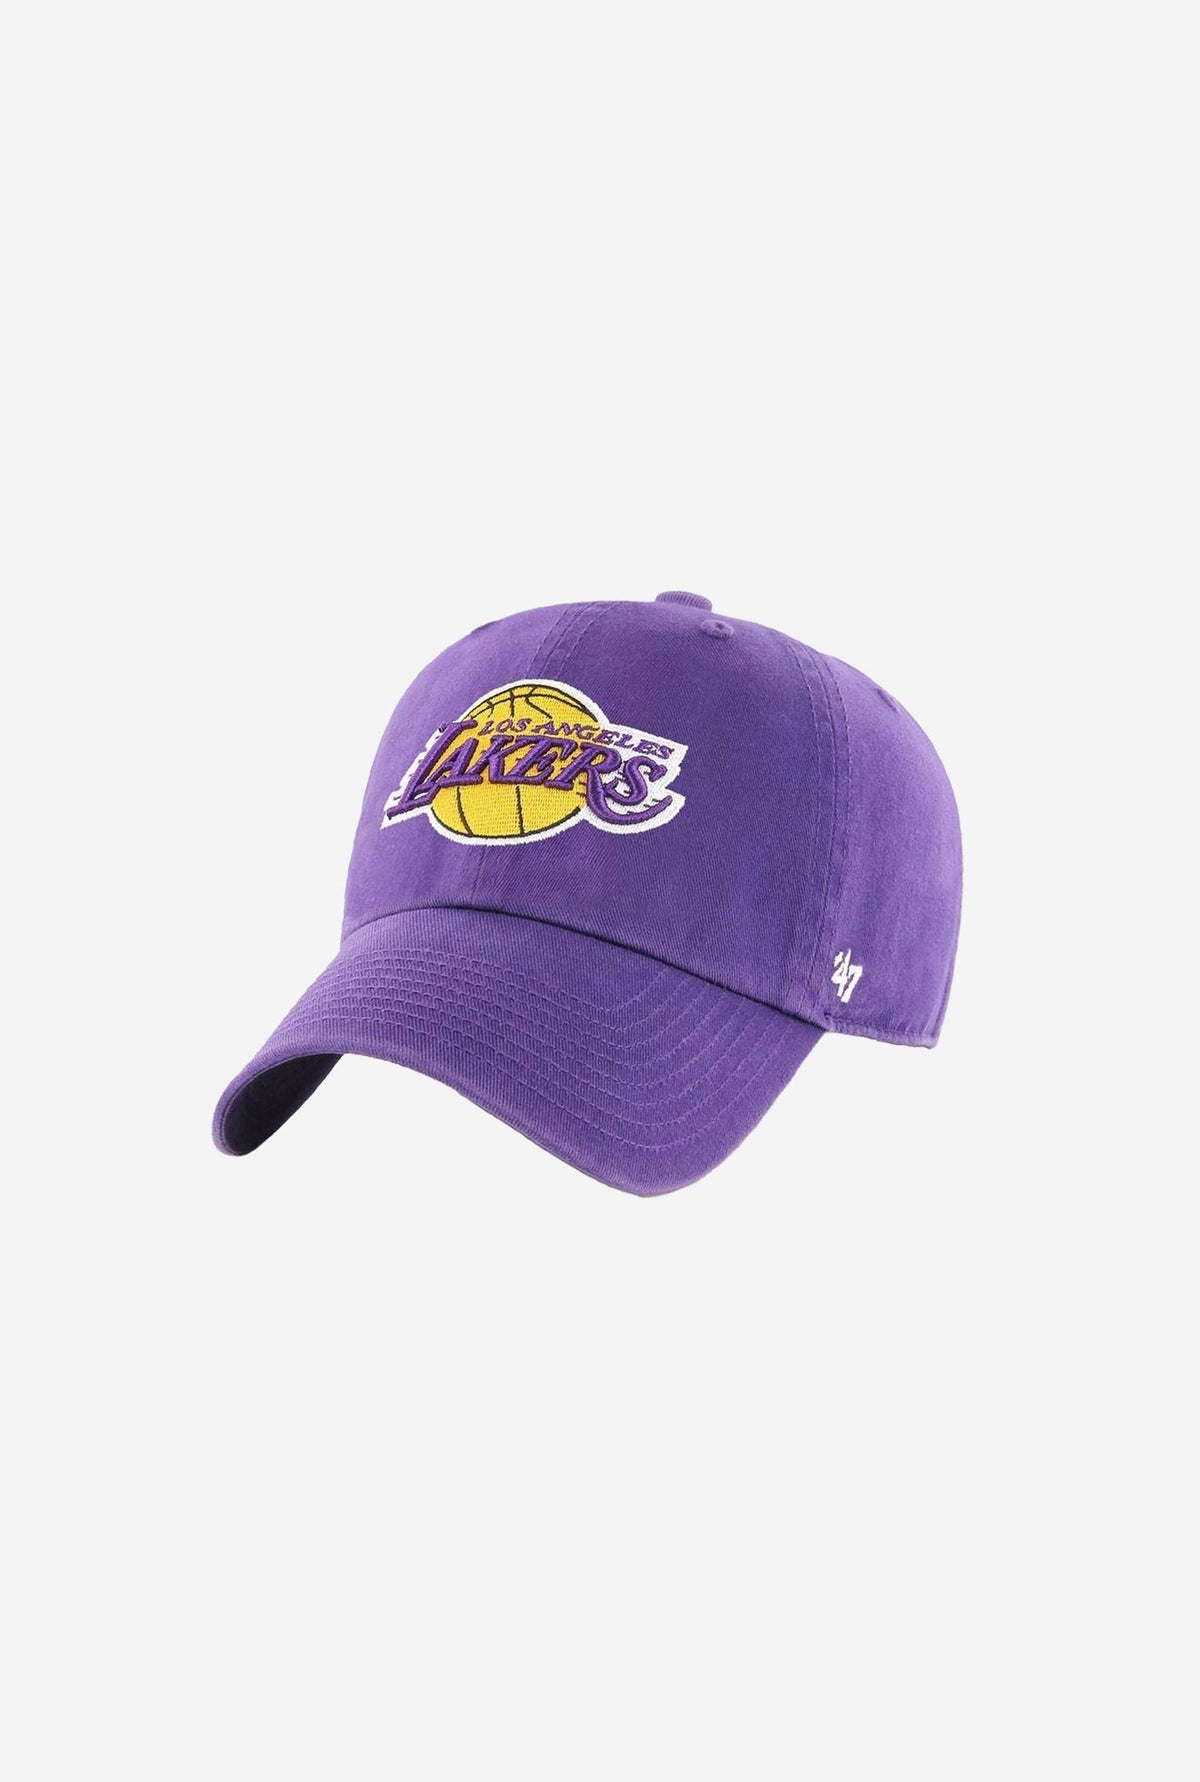 Los Angeles Lakers Alternate Clean Up Cap - Purple